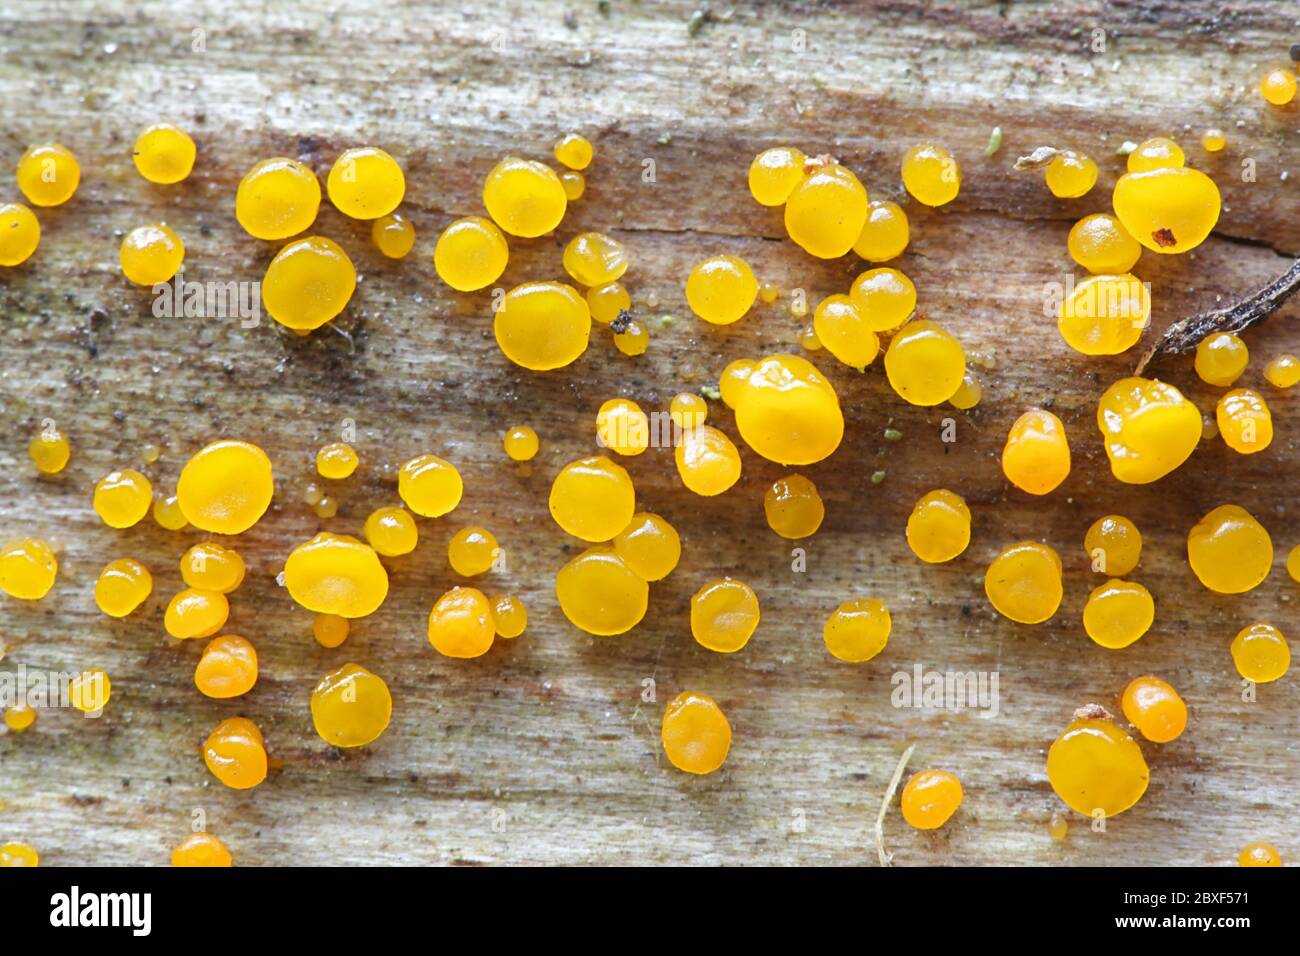 Dacrymyces capitatus, jellyspot fungus from Finland Stock Photo